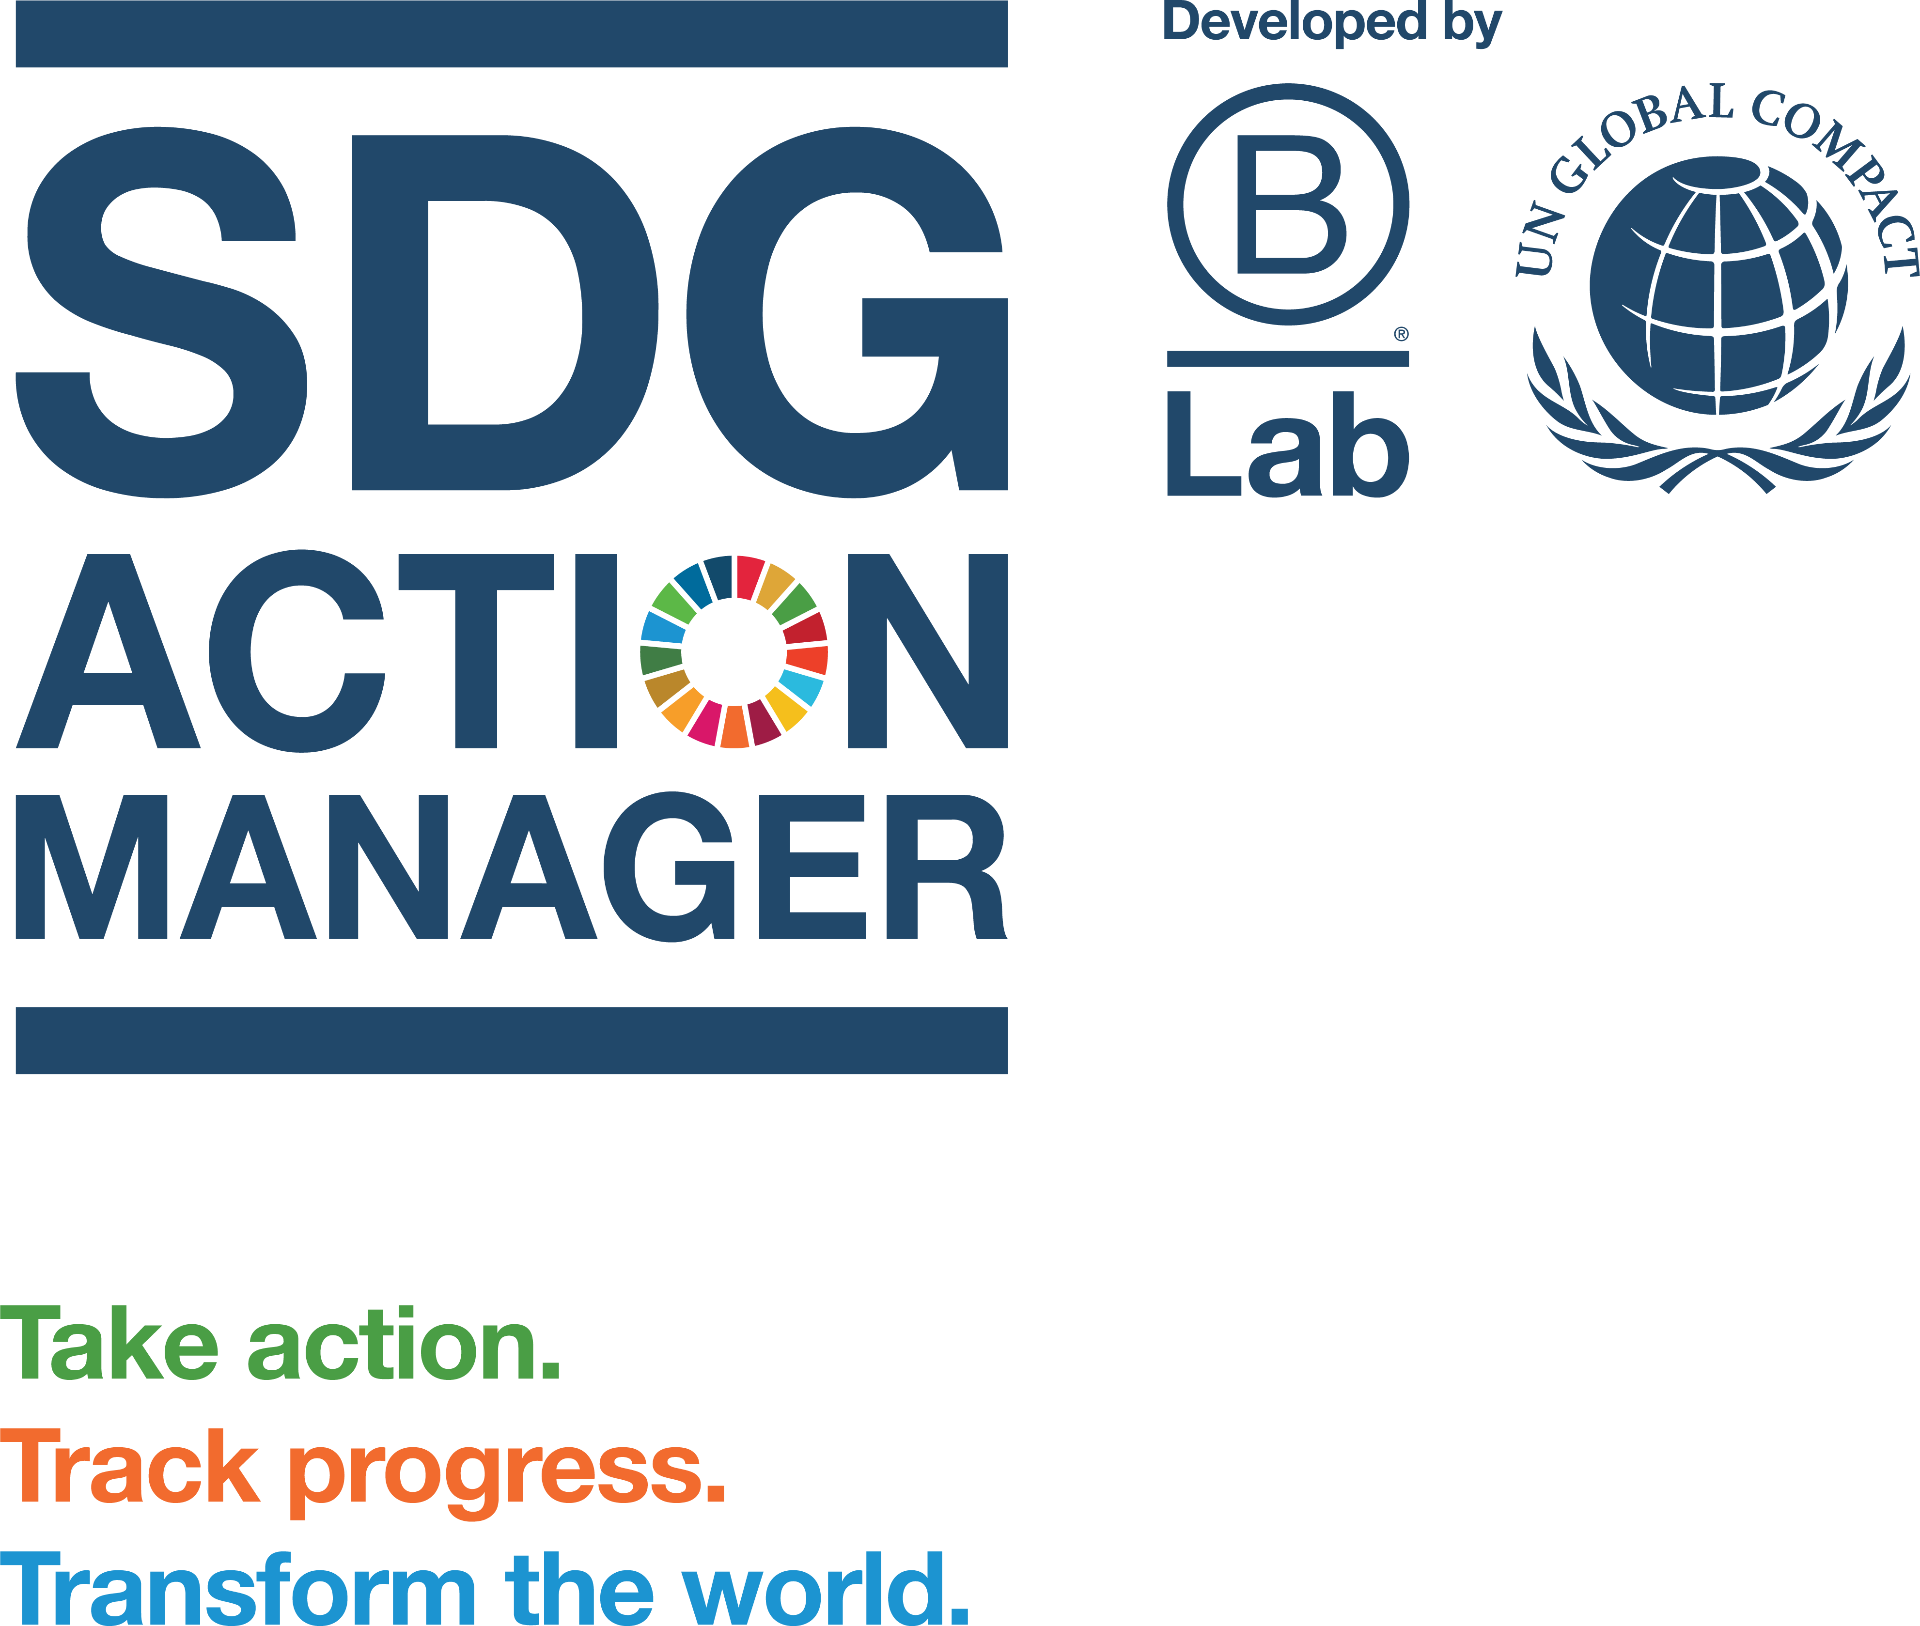 Der SDG Action Manager 